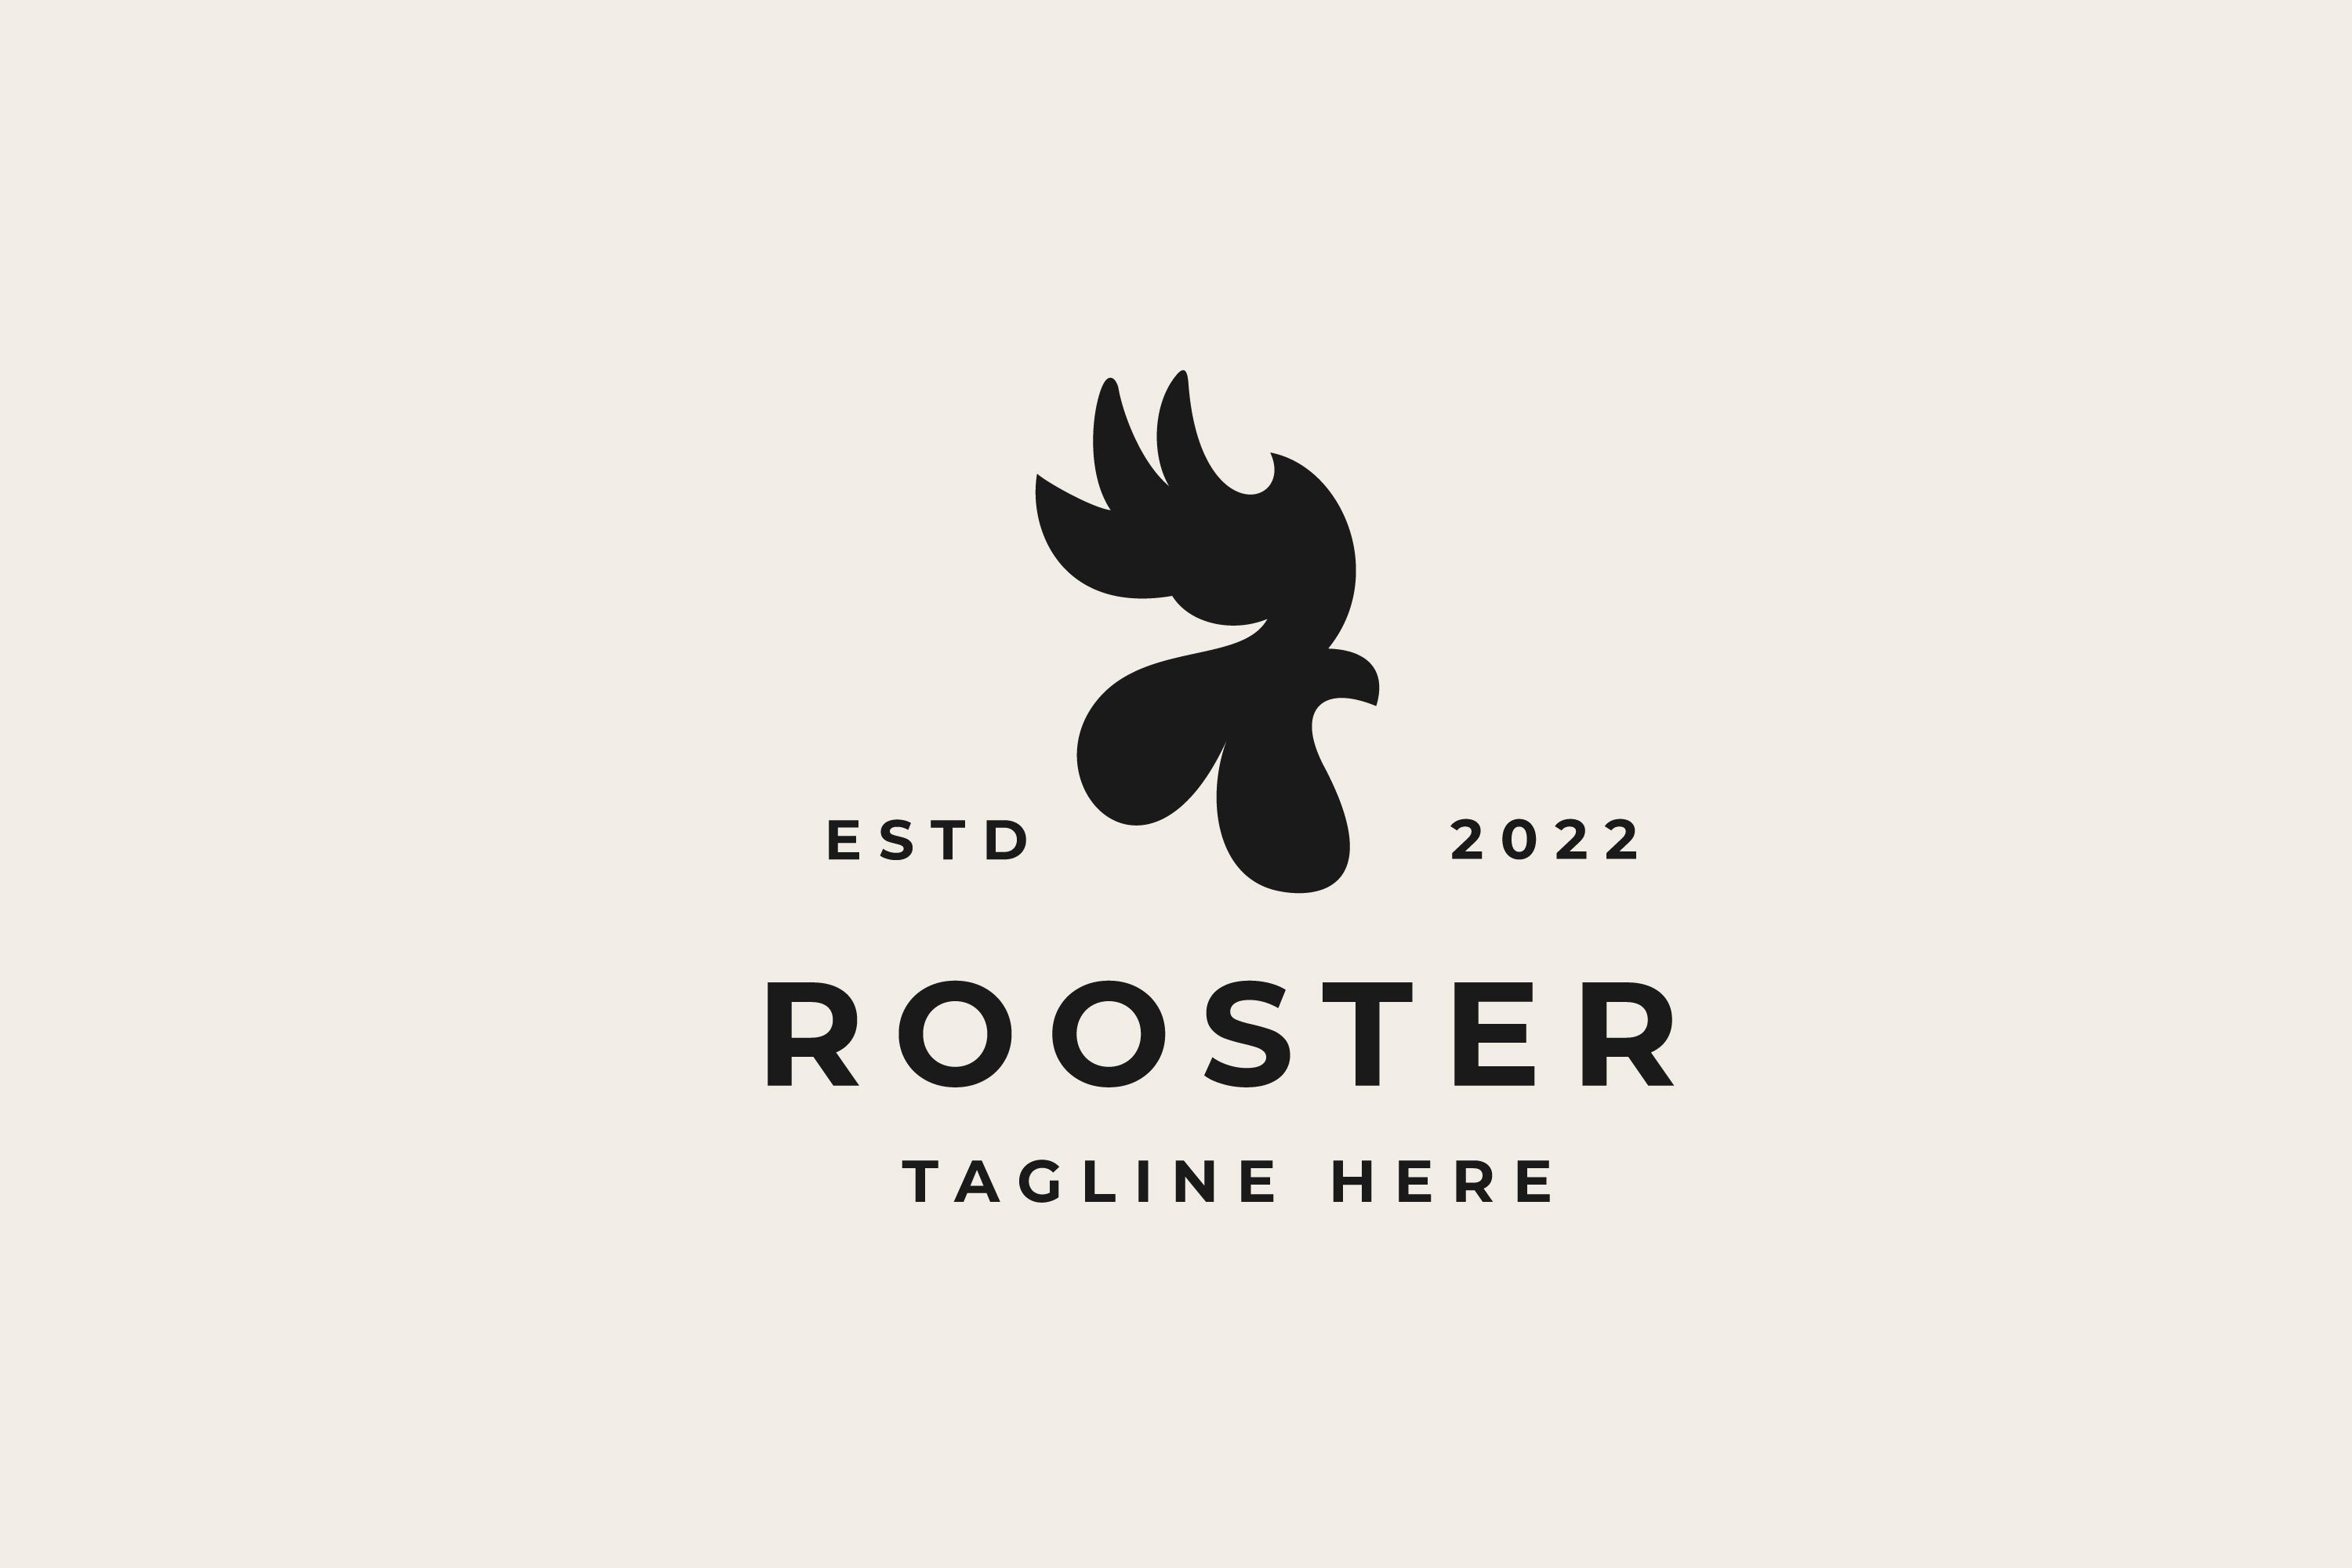 Vintage Hipster Rooster head logo de cover image.